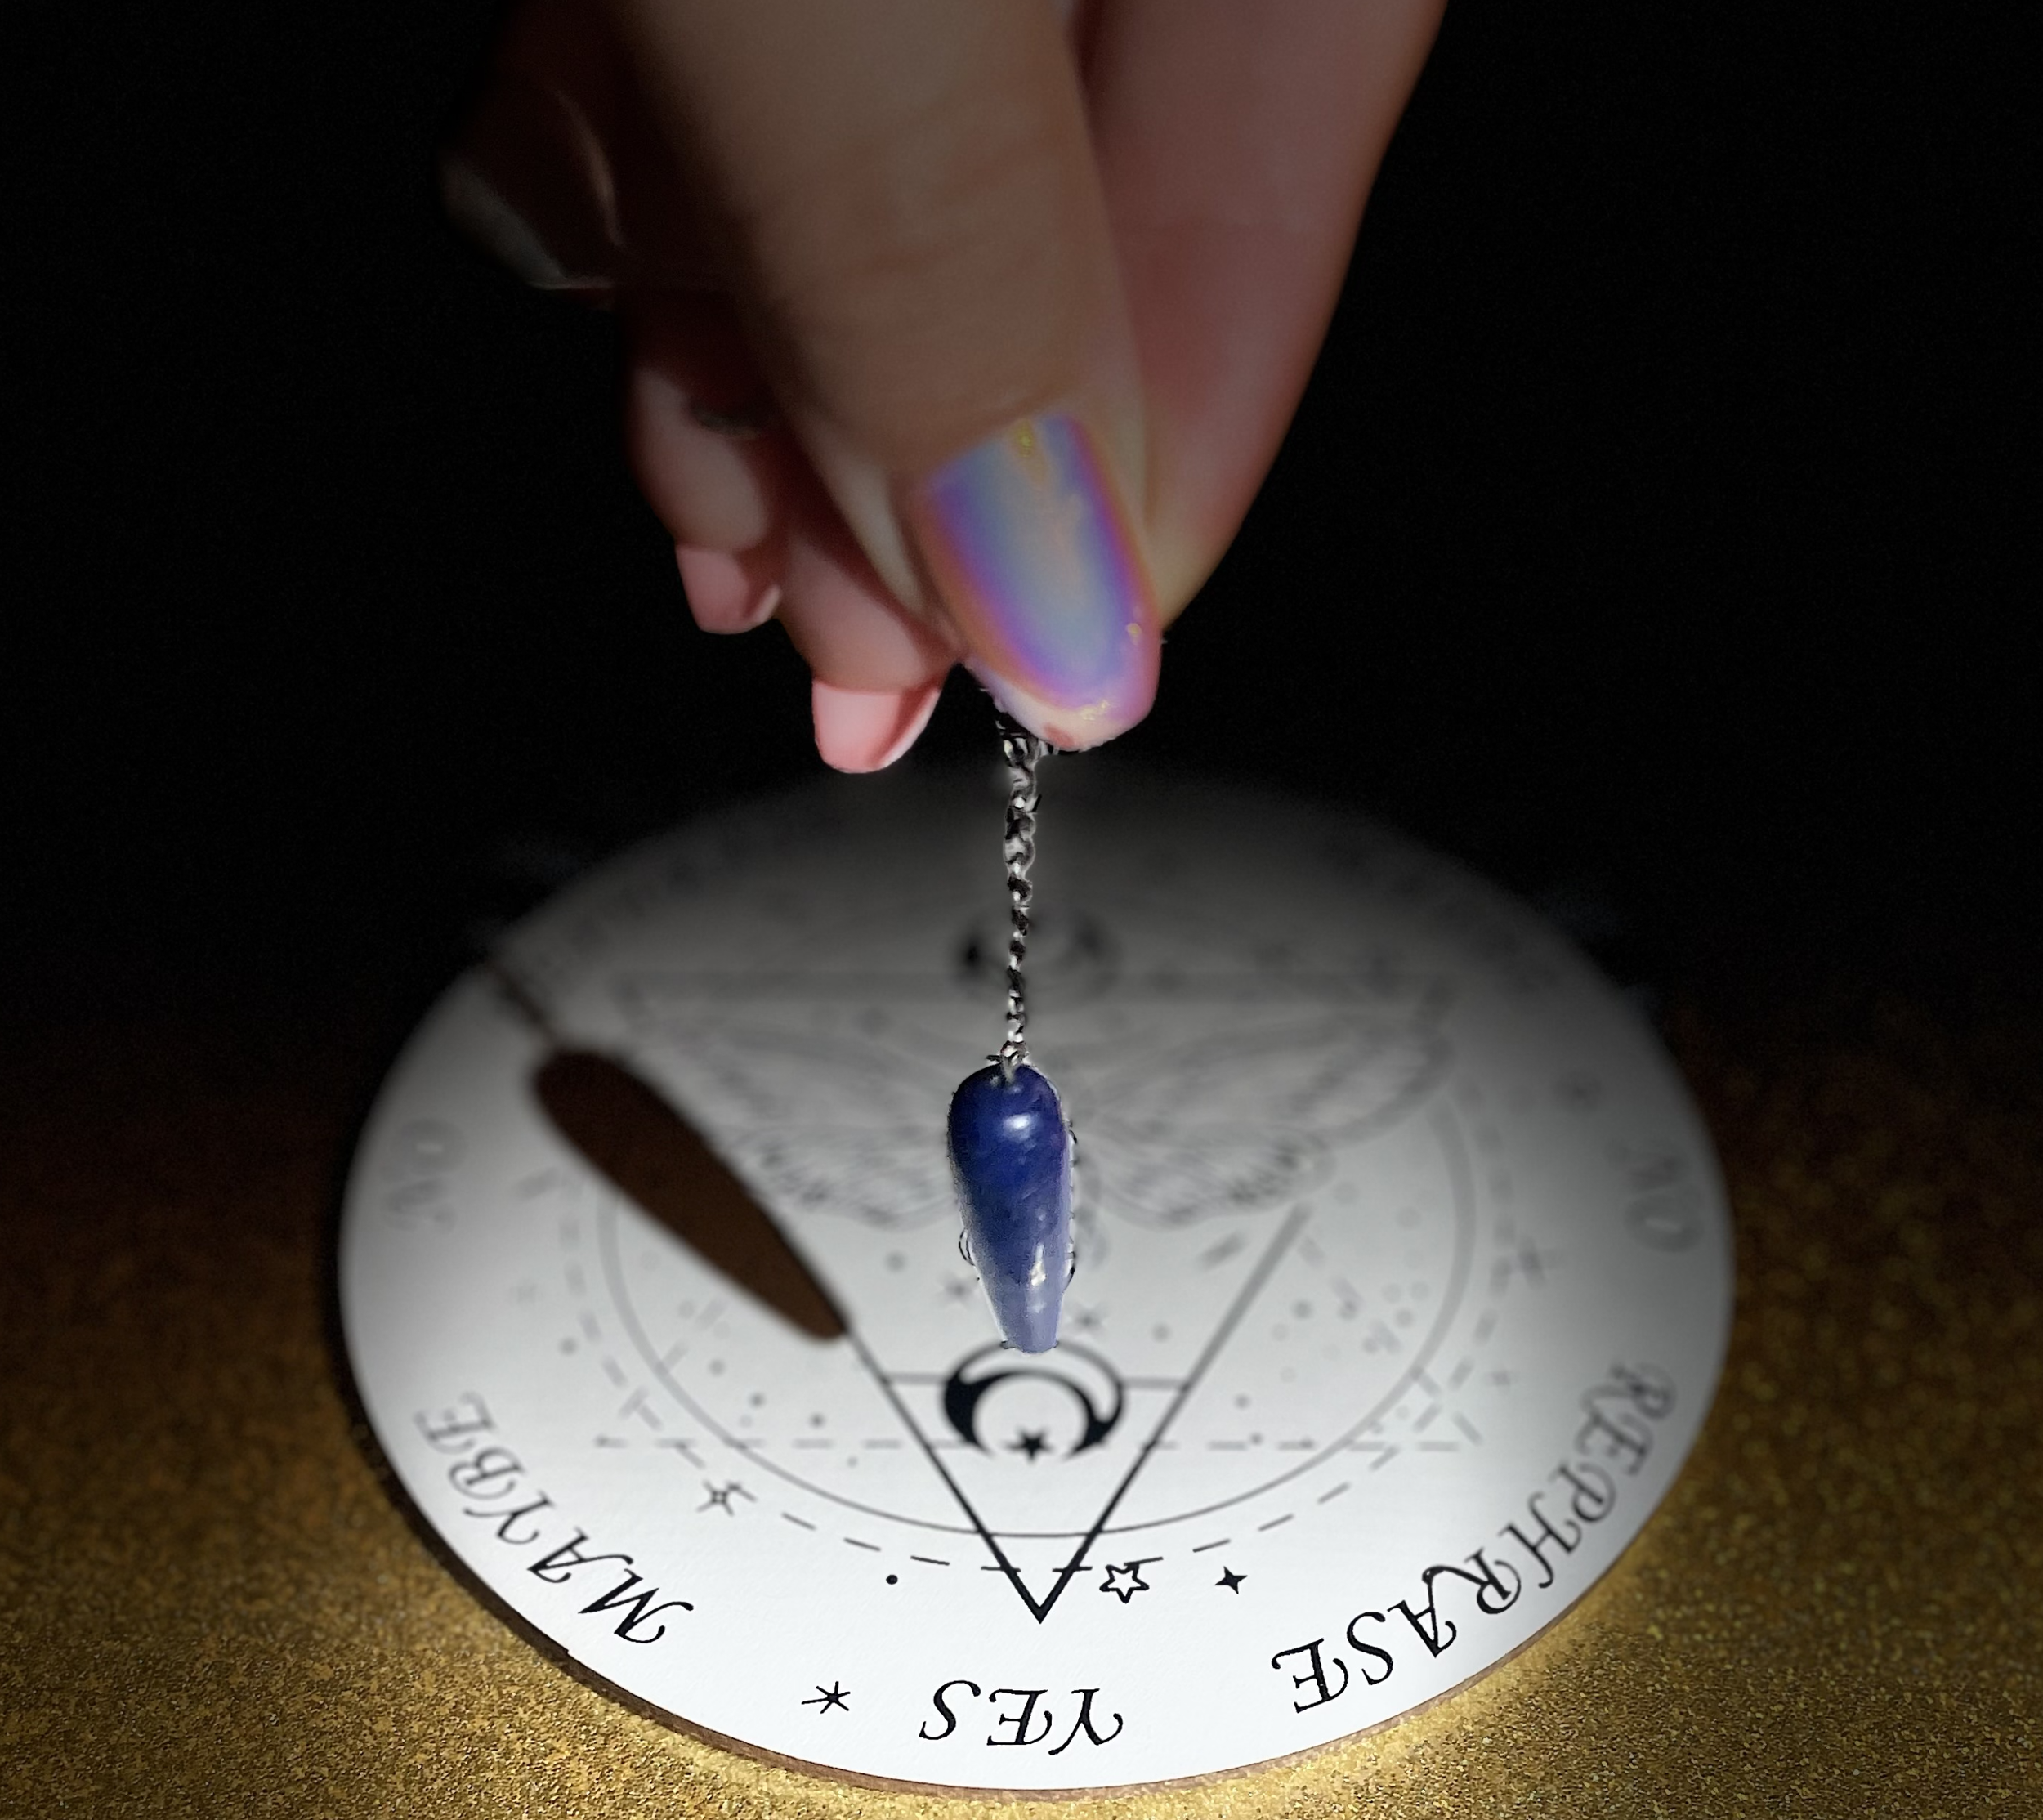 Pendulum Dowsing Class